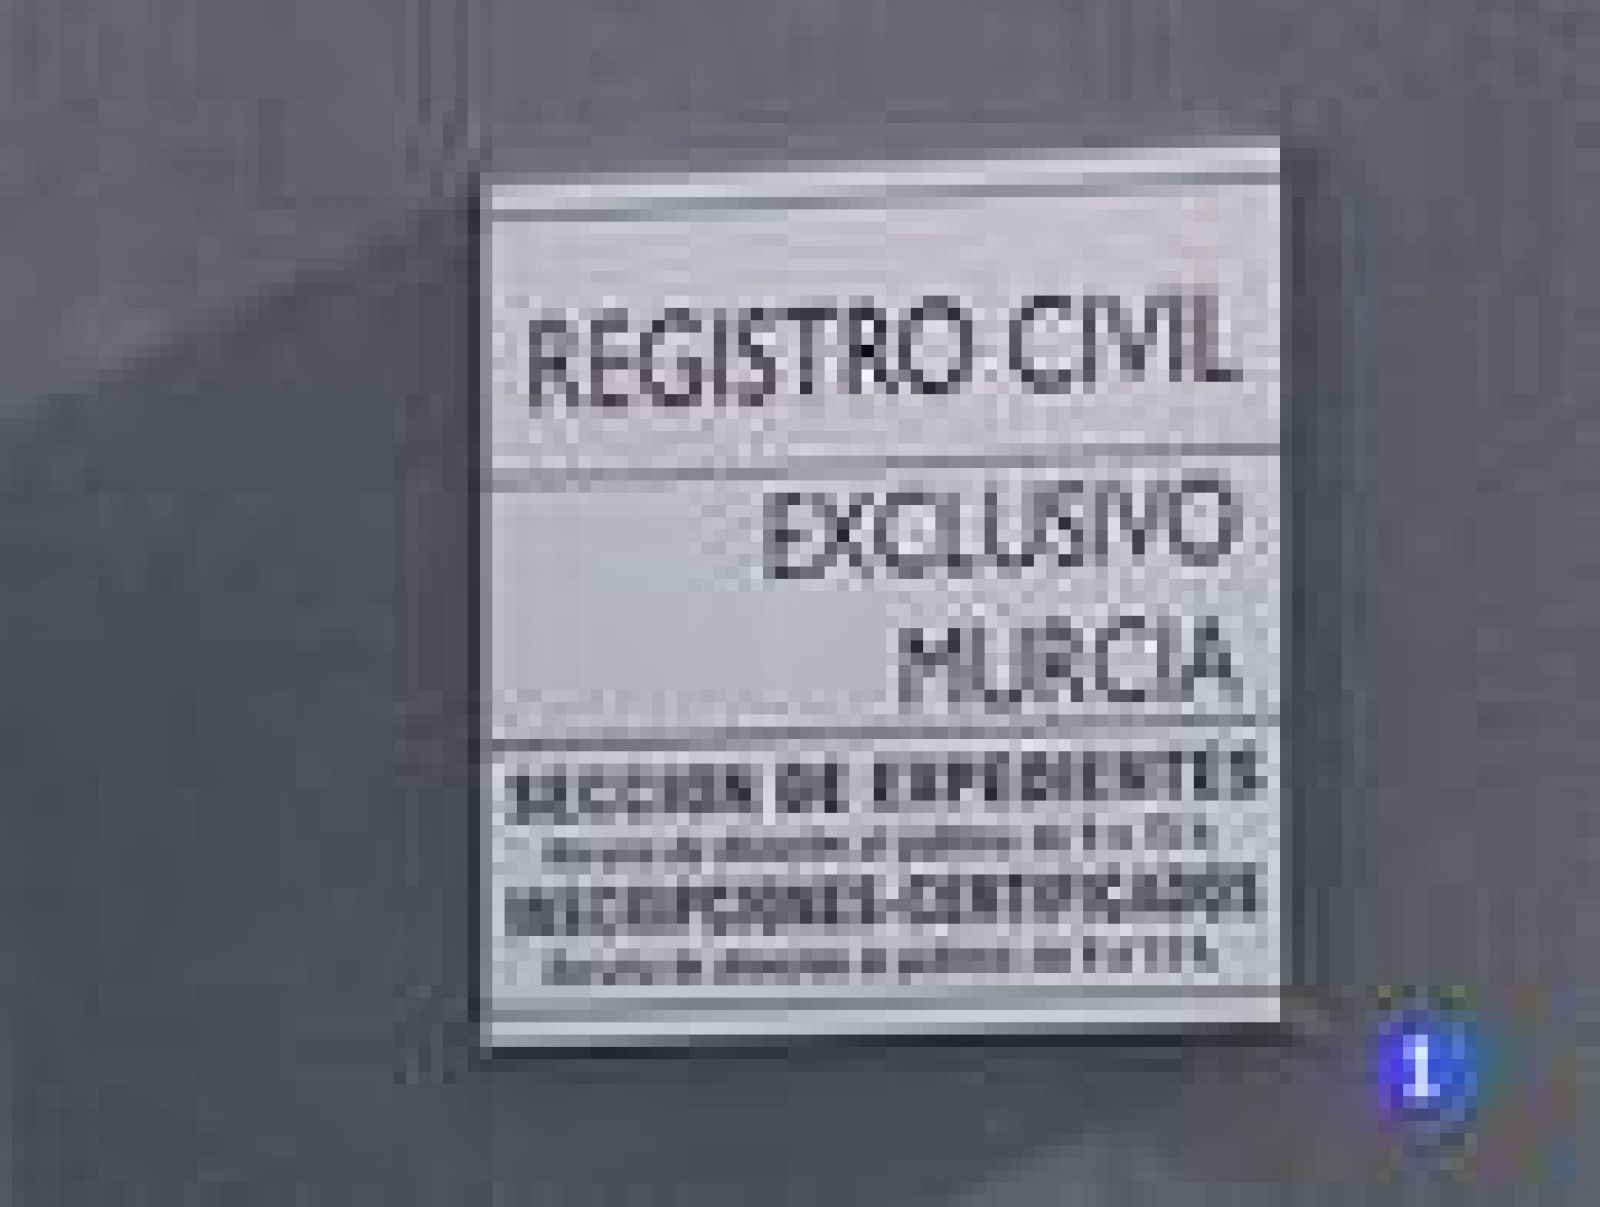 Un juez de Murcia sancionado por insultar